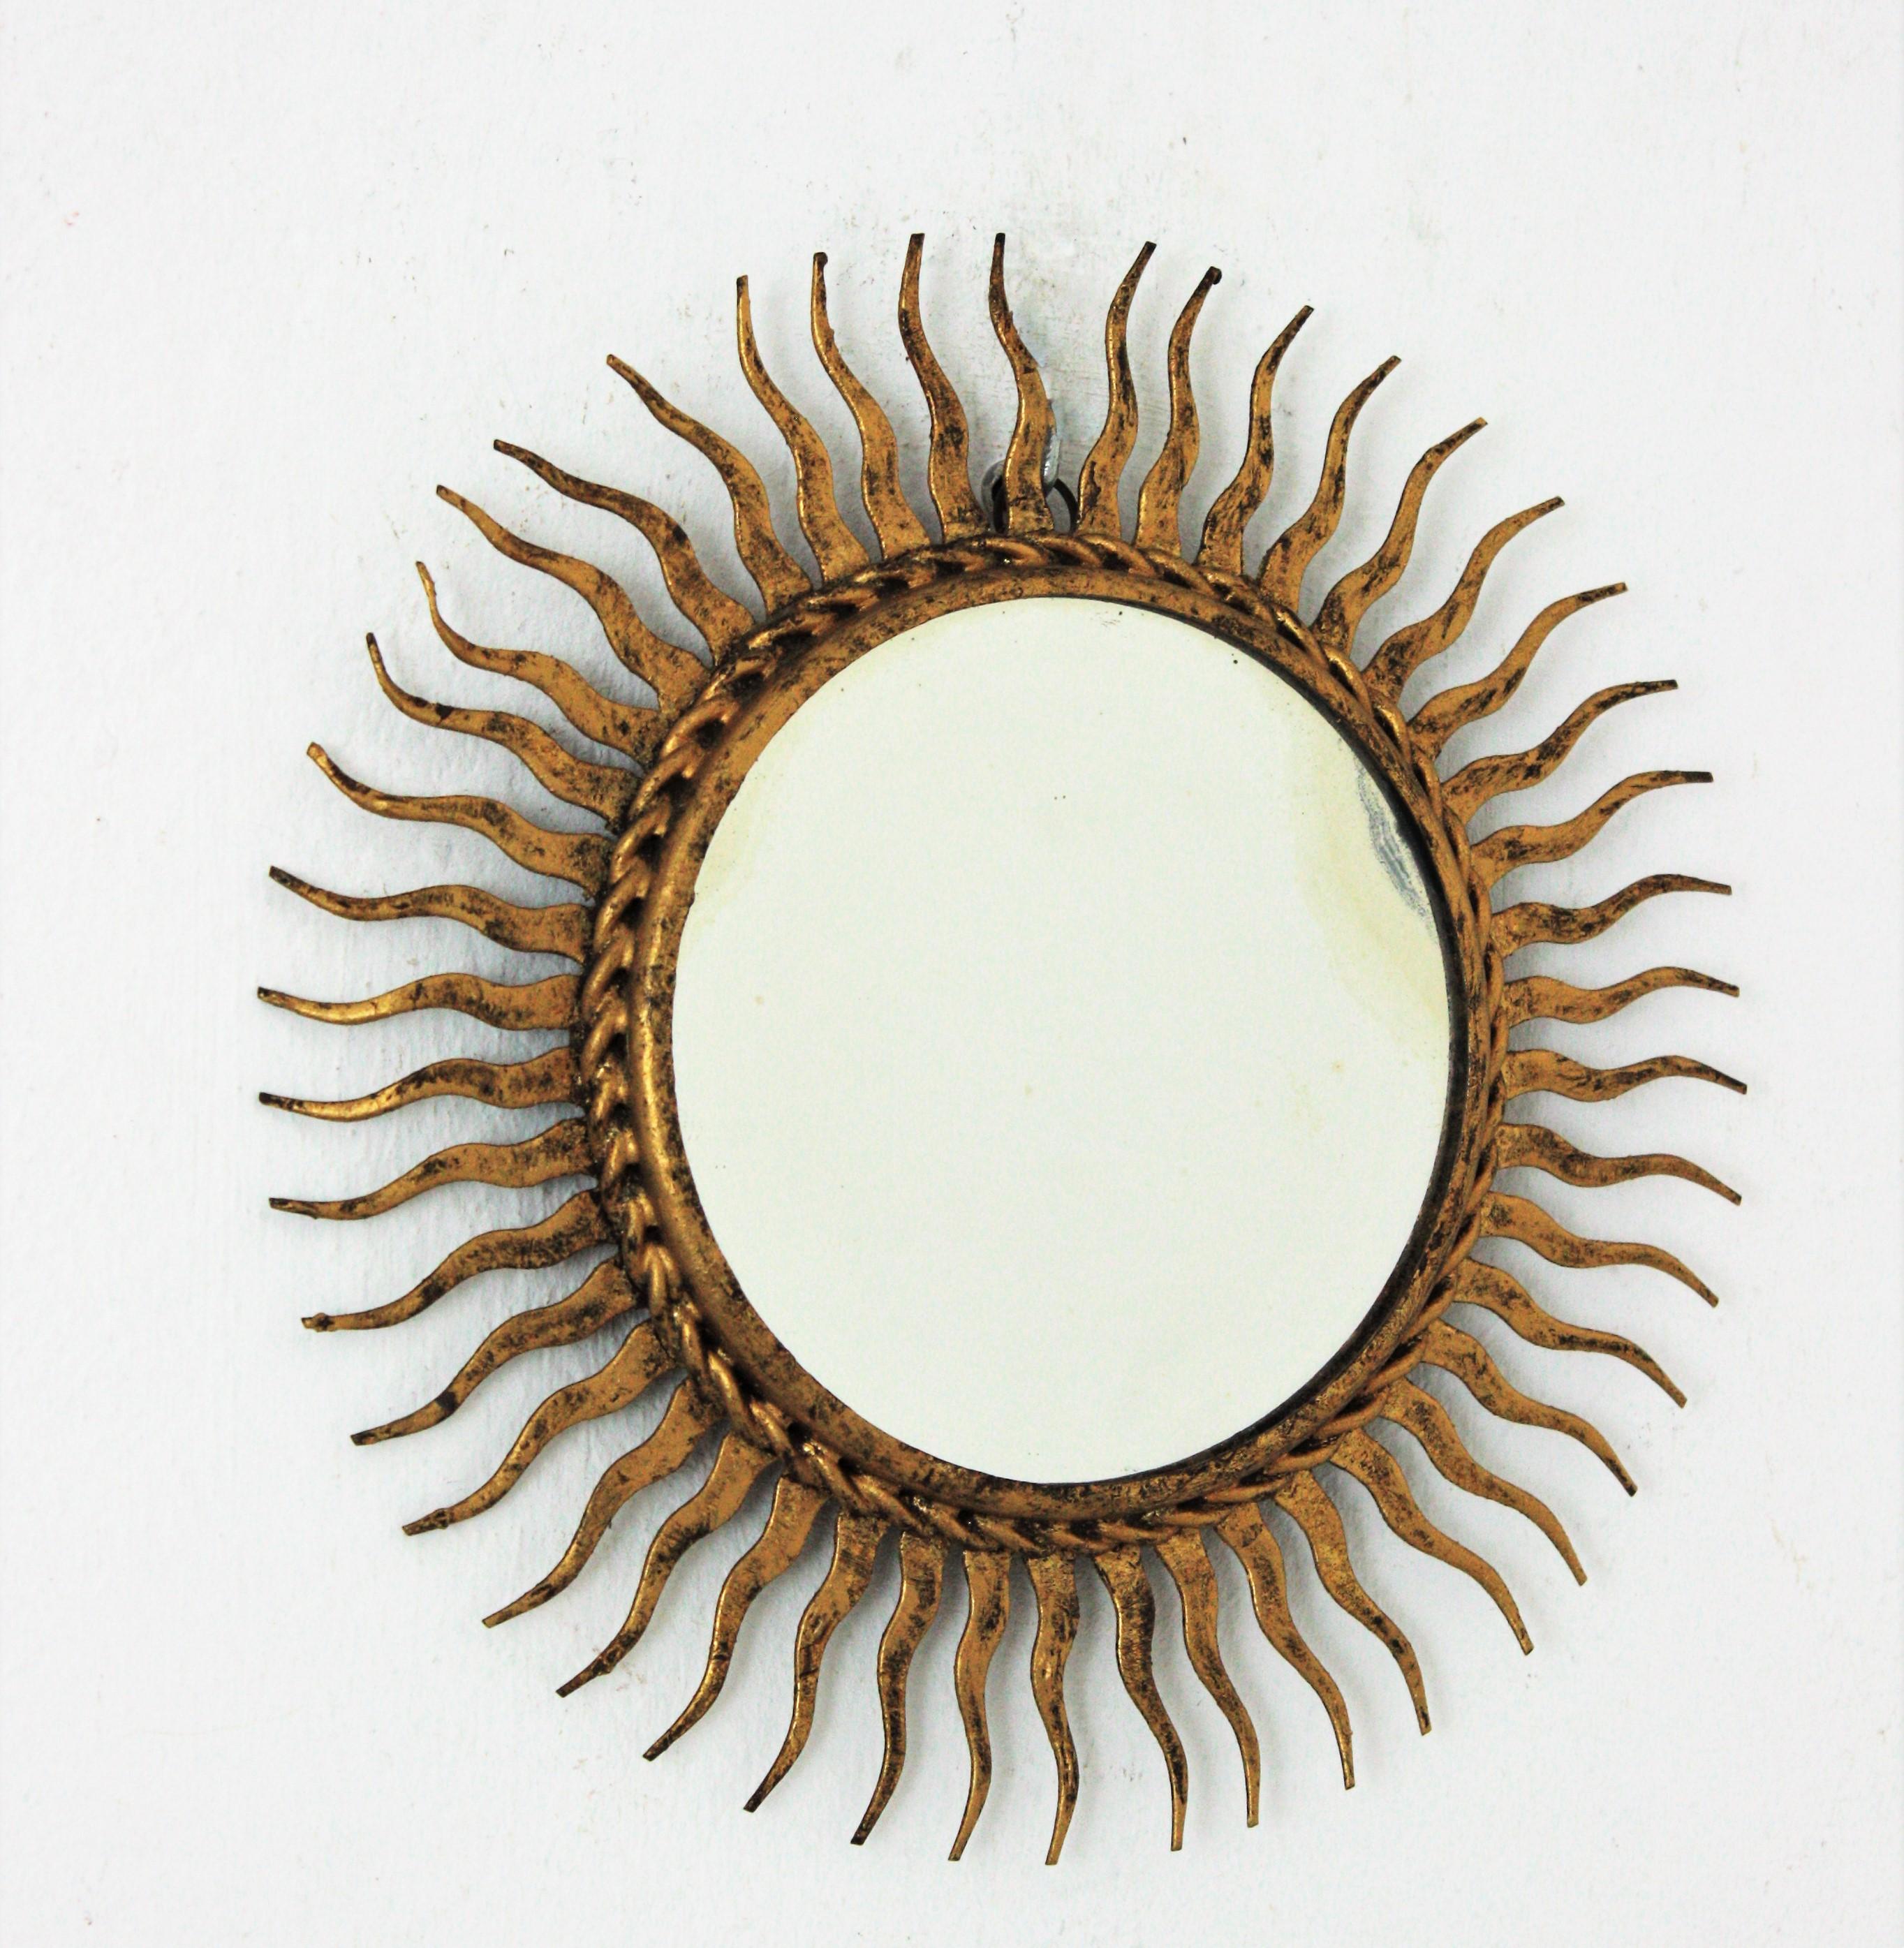 Miroir en forme de soleil en fer forgé et doré de taille miniature. Espagne, années 1960.
Fer forgé à la main, finition dorée à la feuille d'or.
Ce joli miroir présente une belle patine vieillie en fonction de son âge.
Intéressant dans le cadre